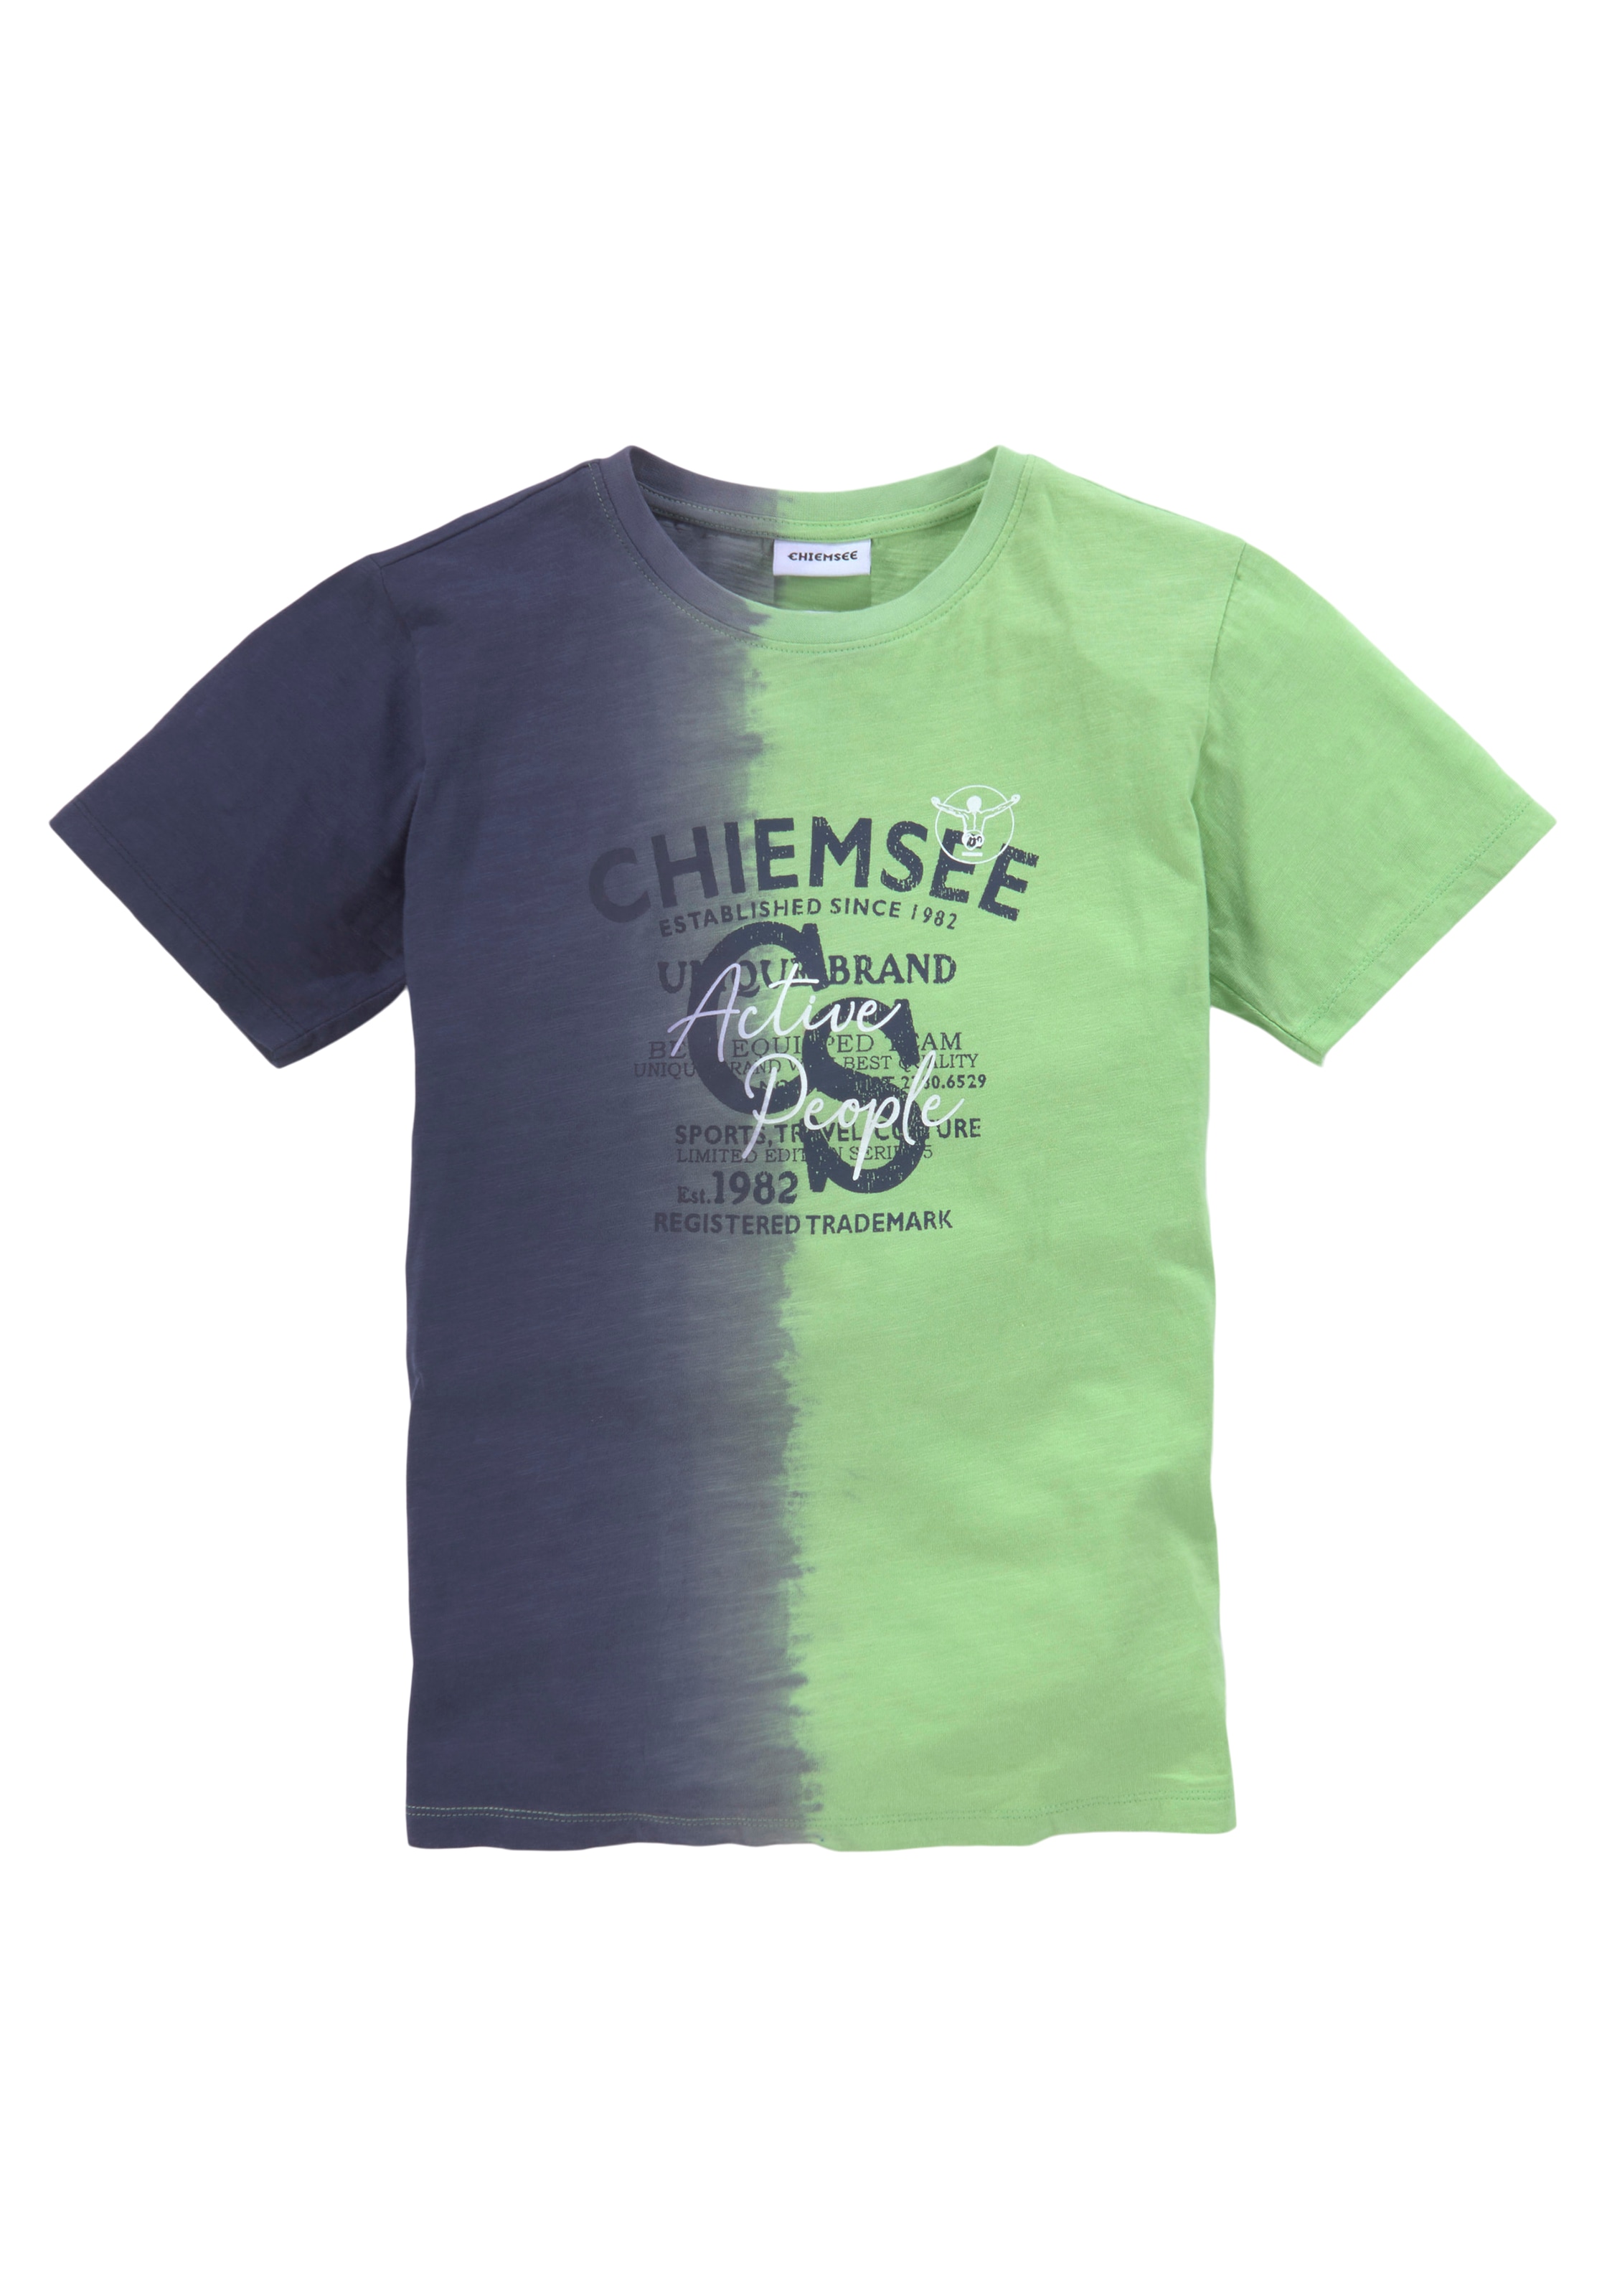 vertikalem OTTO Chiemsee mit T-Shirt bestellen Farbverlauf bei »Farbverlauf«,